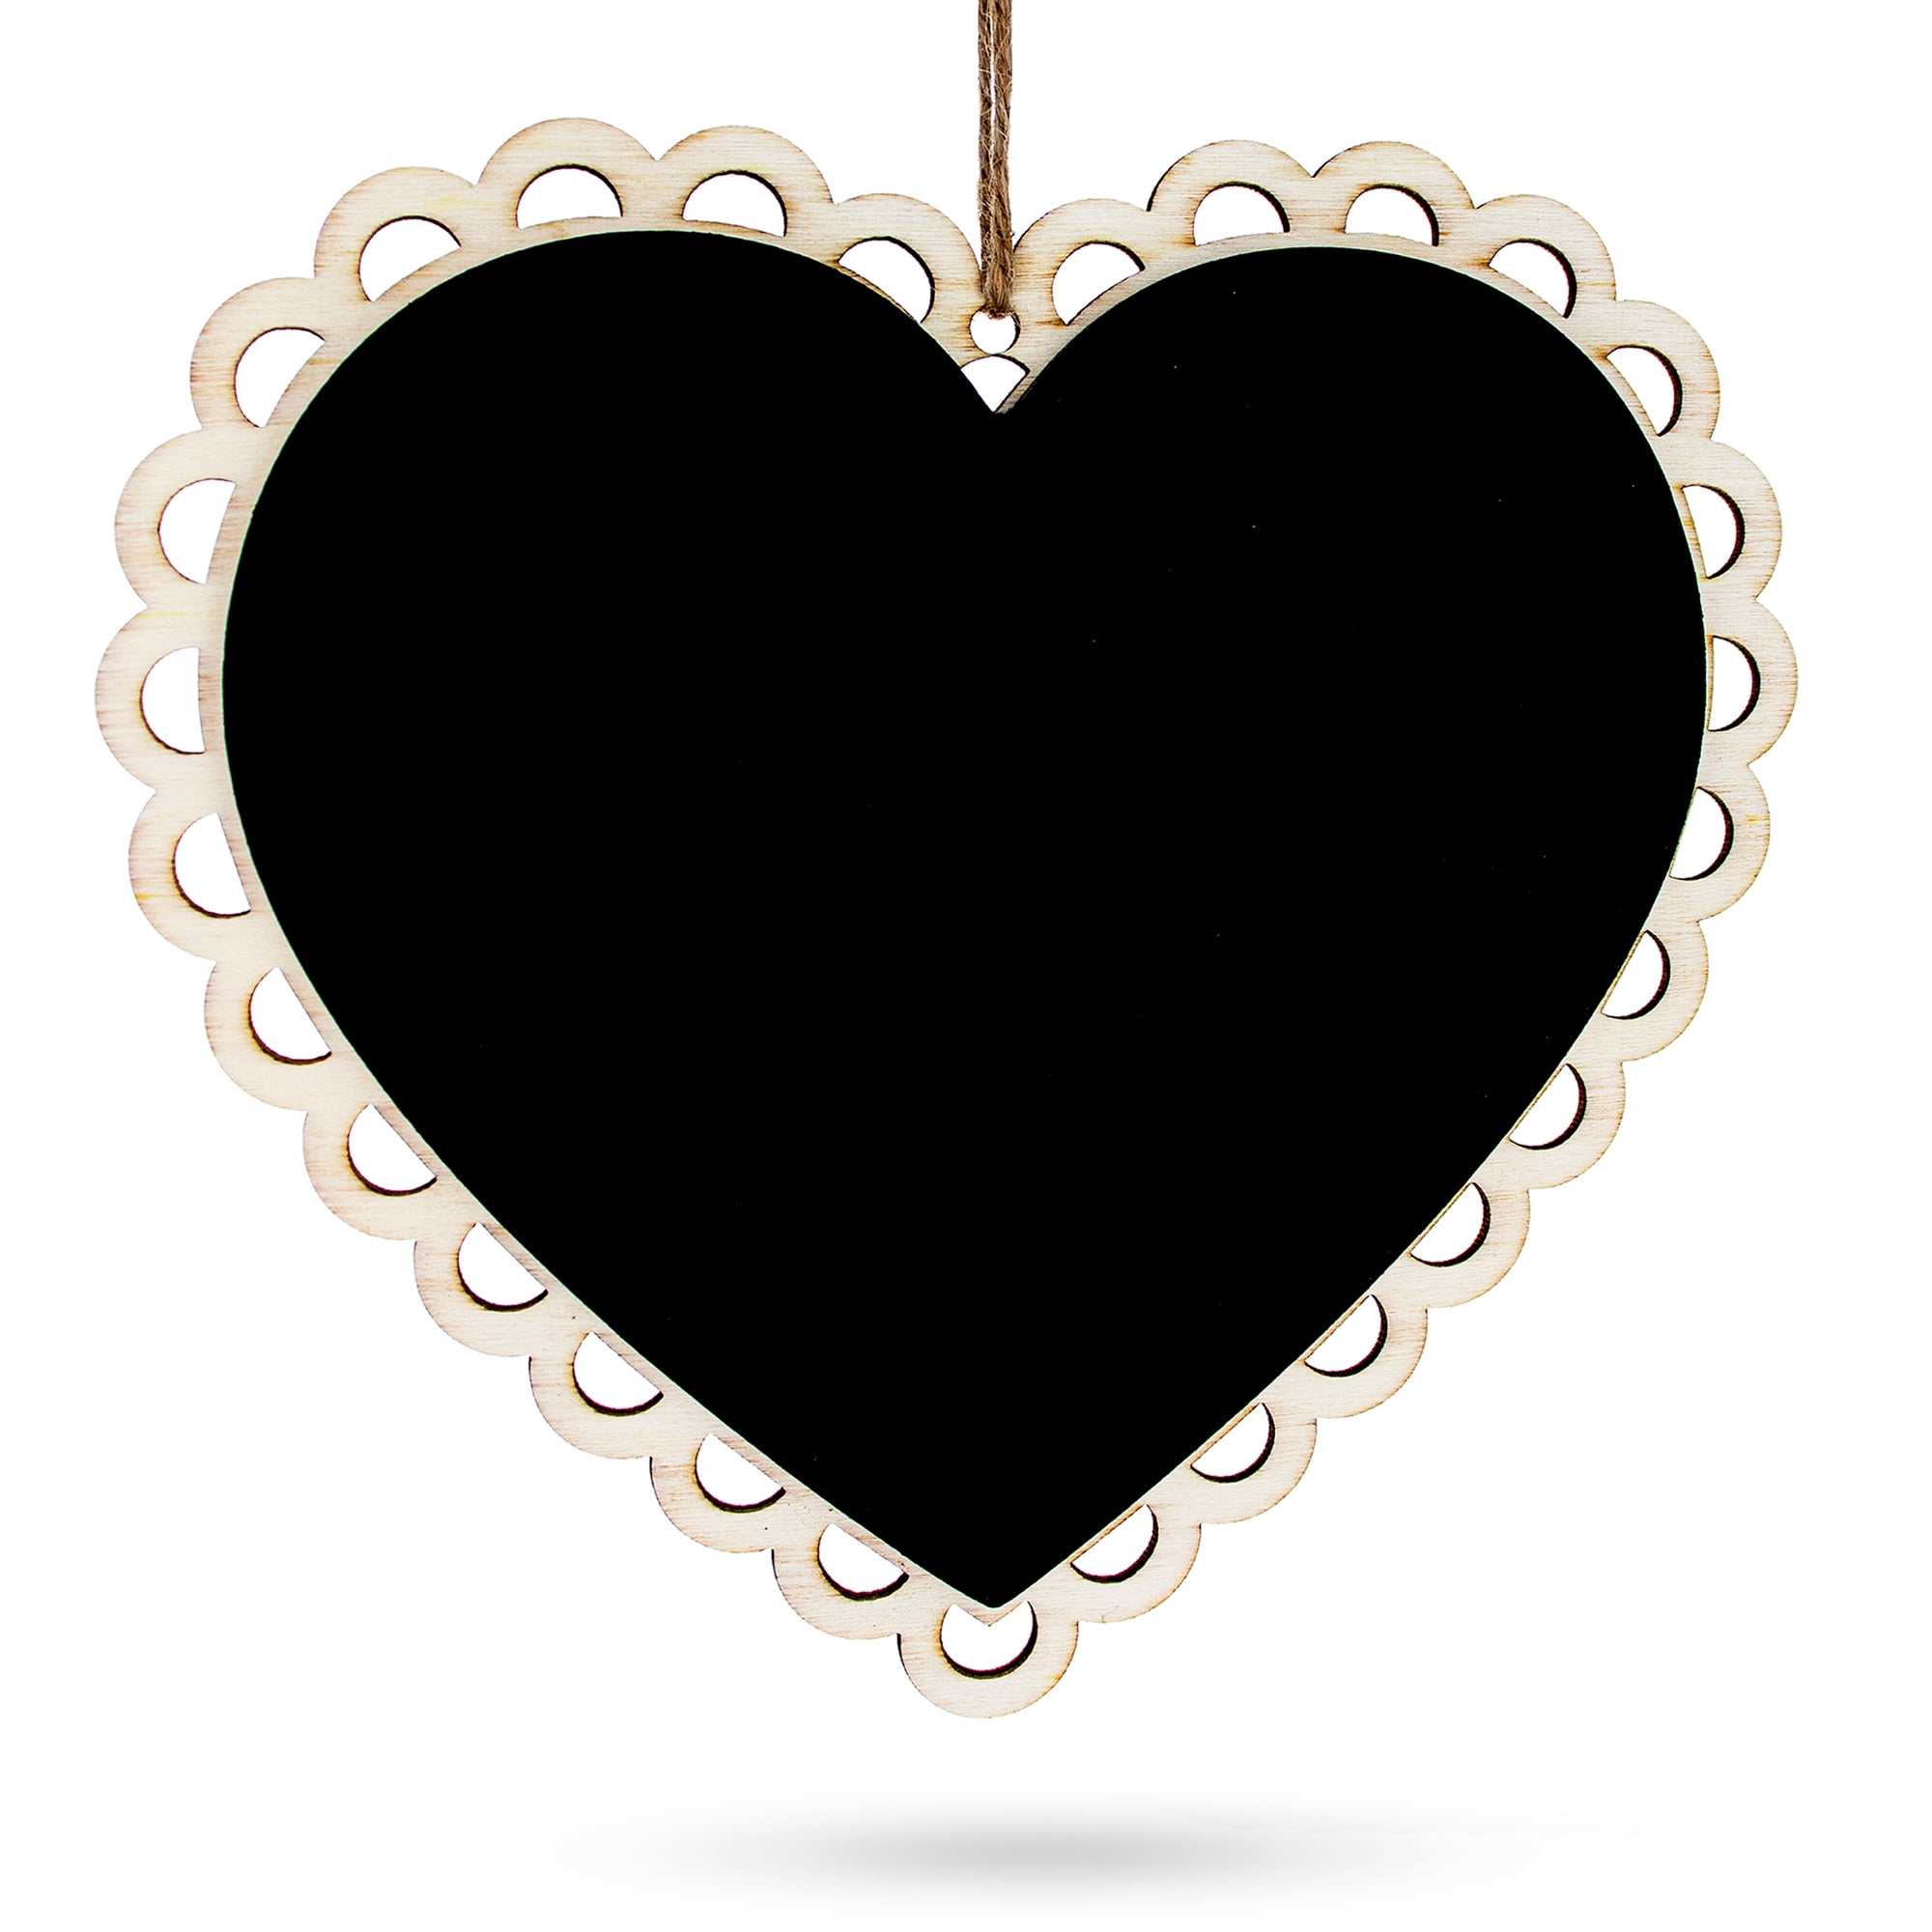 20 Pieces Mini Heart Shape Hanging Wooden Blackboard Chalkboard Blank Tags with 